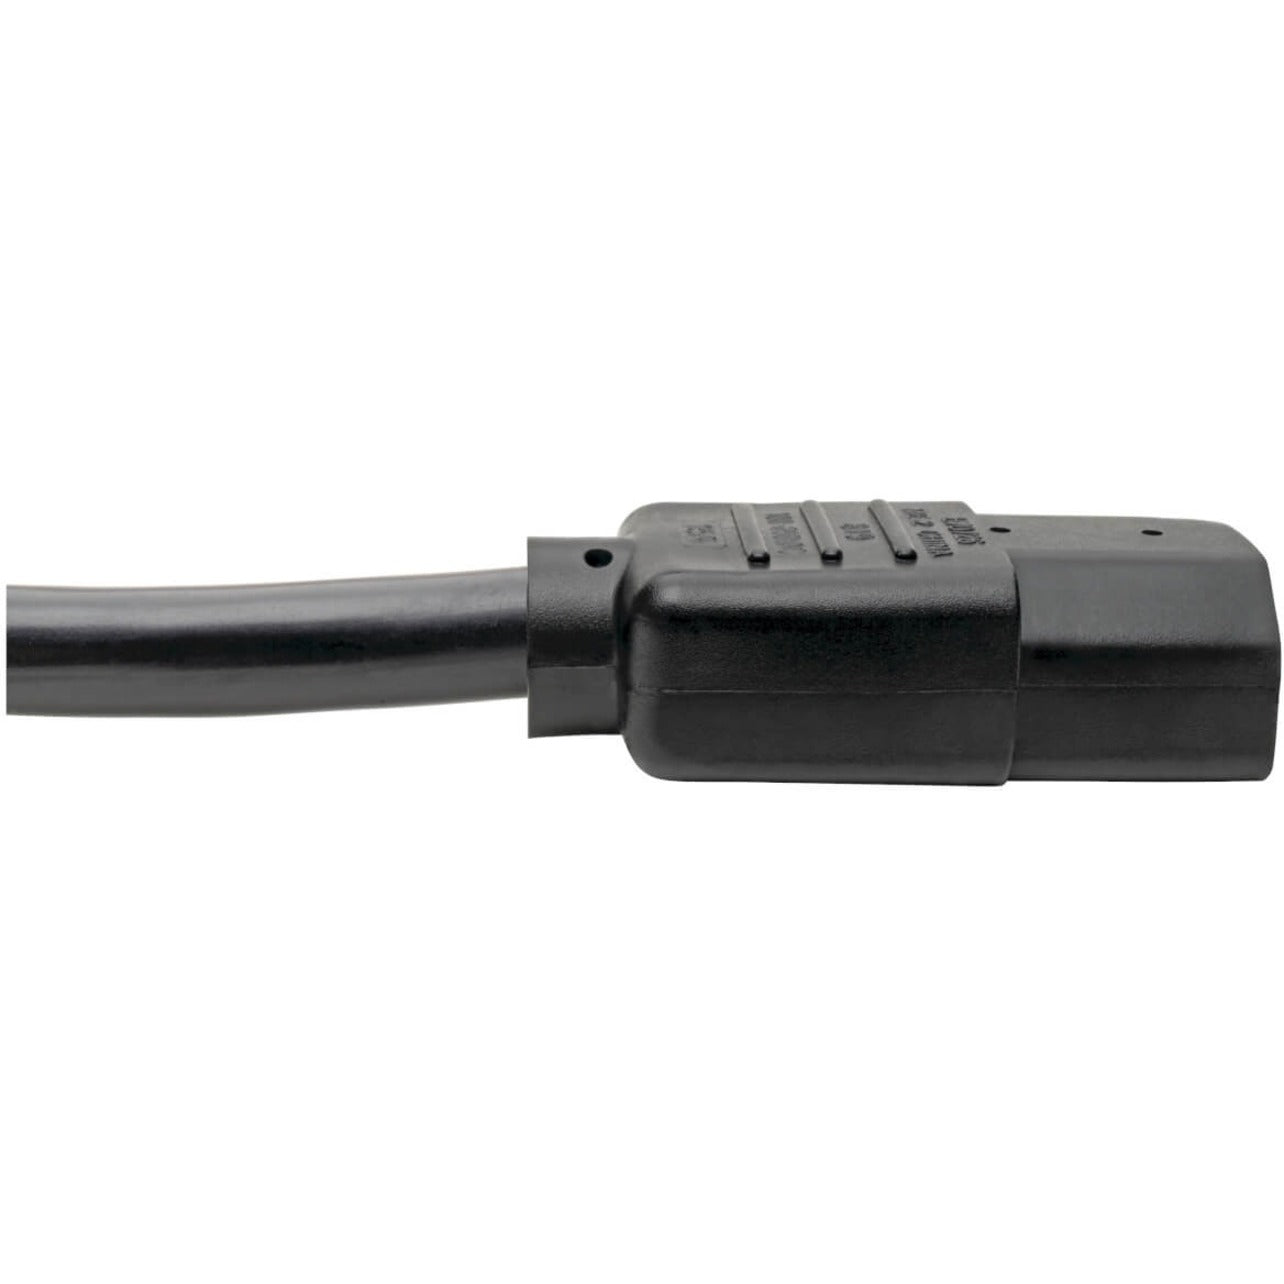 Tripp Lite P007-006 Standard Power Cord, 6 ft, 15A, 220V AC, NEMA 5-15P to IEC 60320 C13